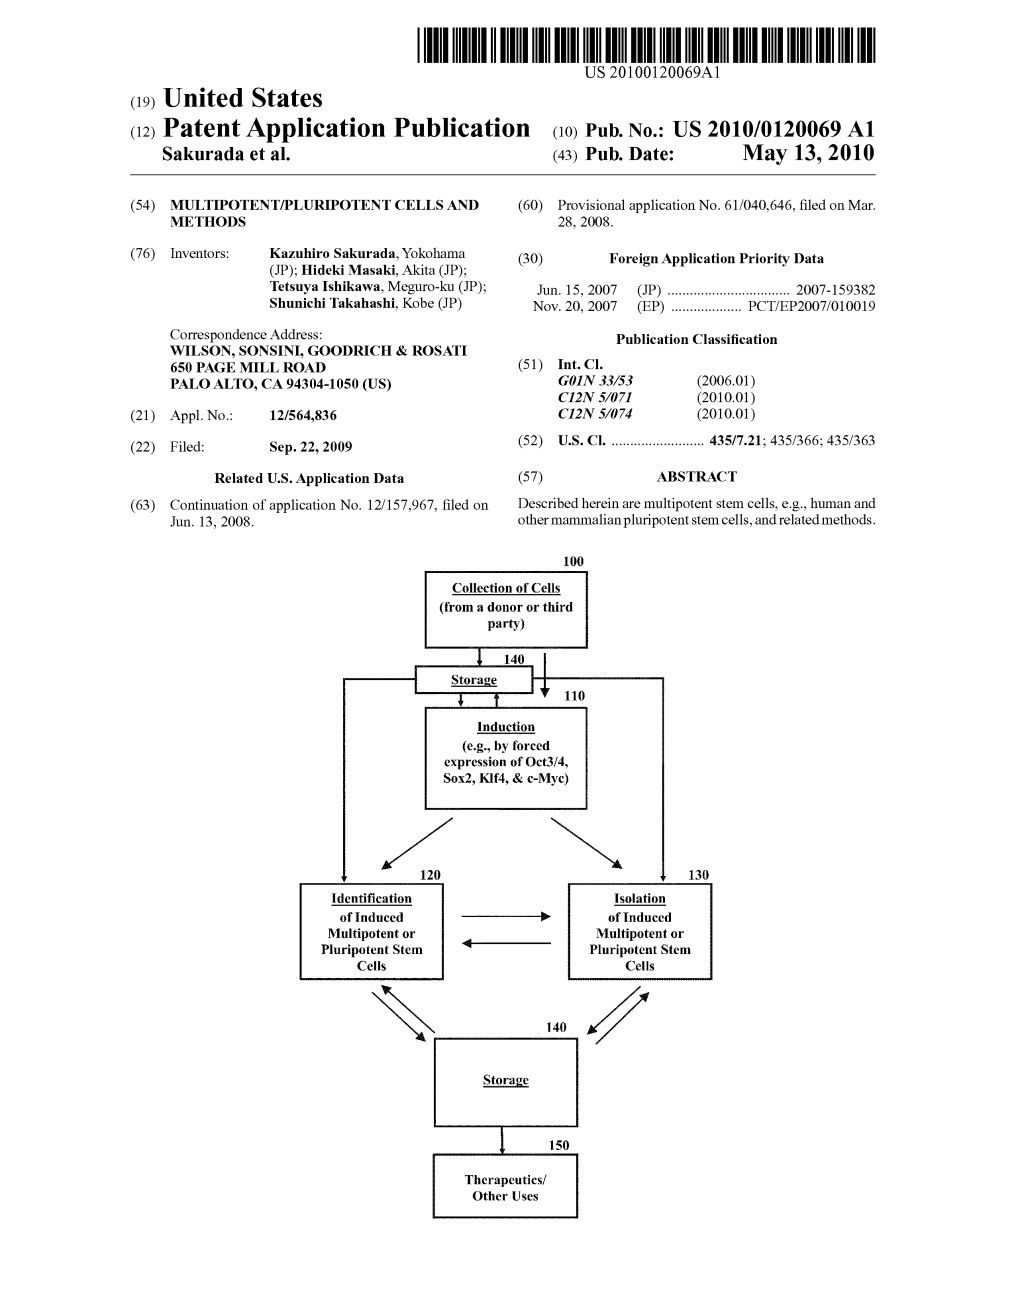 (12) Patent Application Publication (10) Pub. No.: US 2010/0120069 A1 Sakurada Et Al